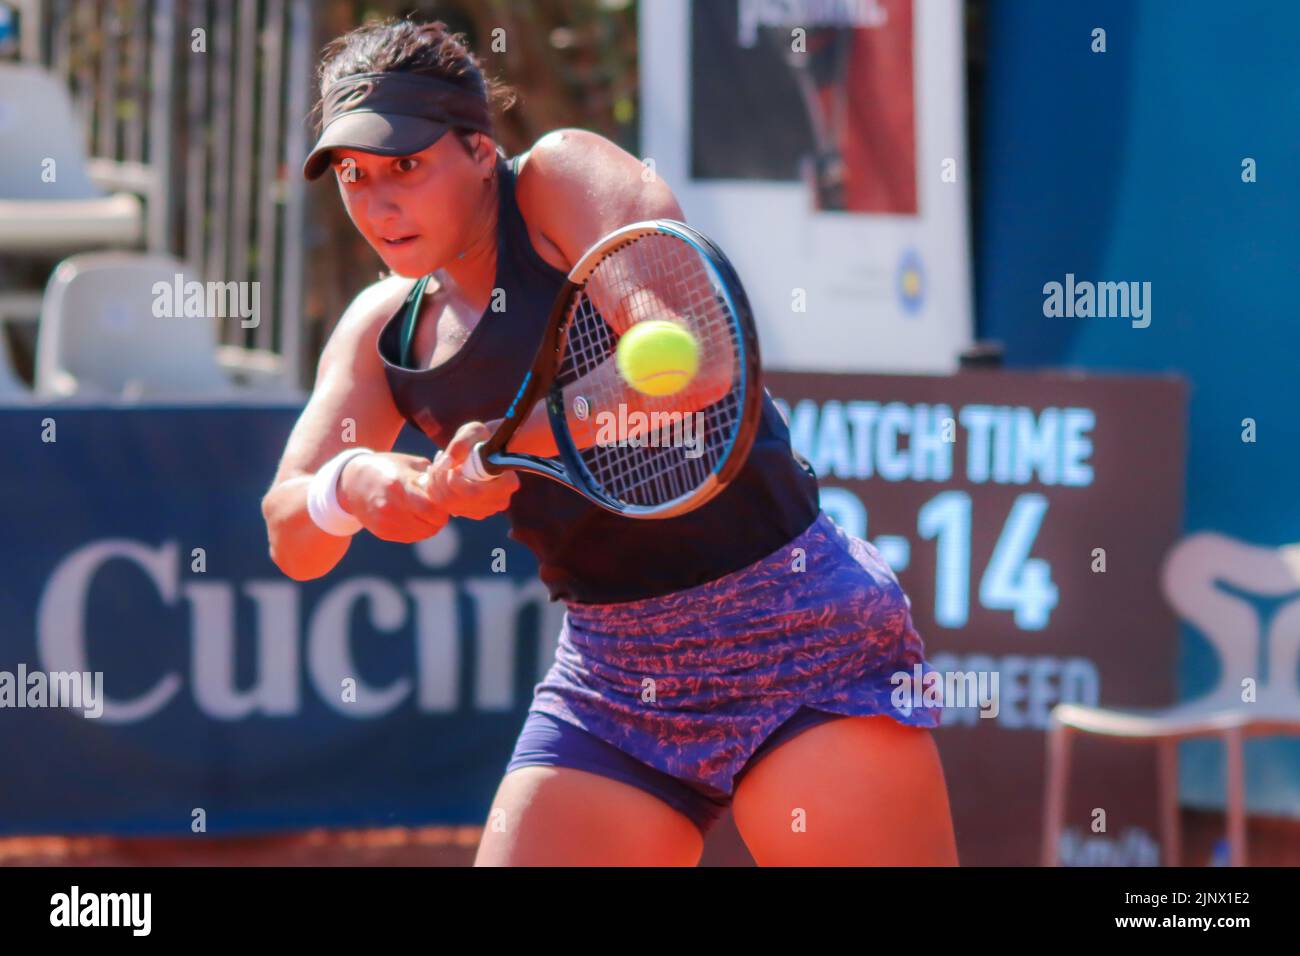 Jaimee Fourlis während der Palermo Ladies Open 2022 Stockfoto